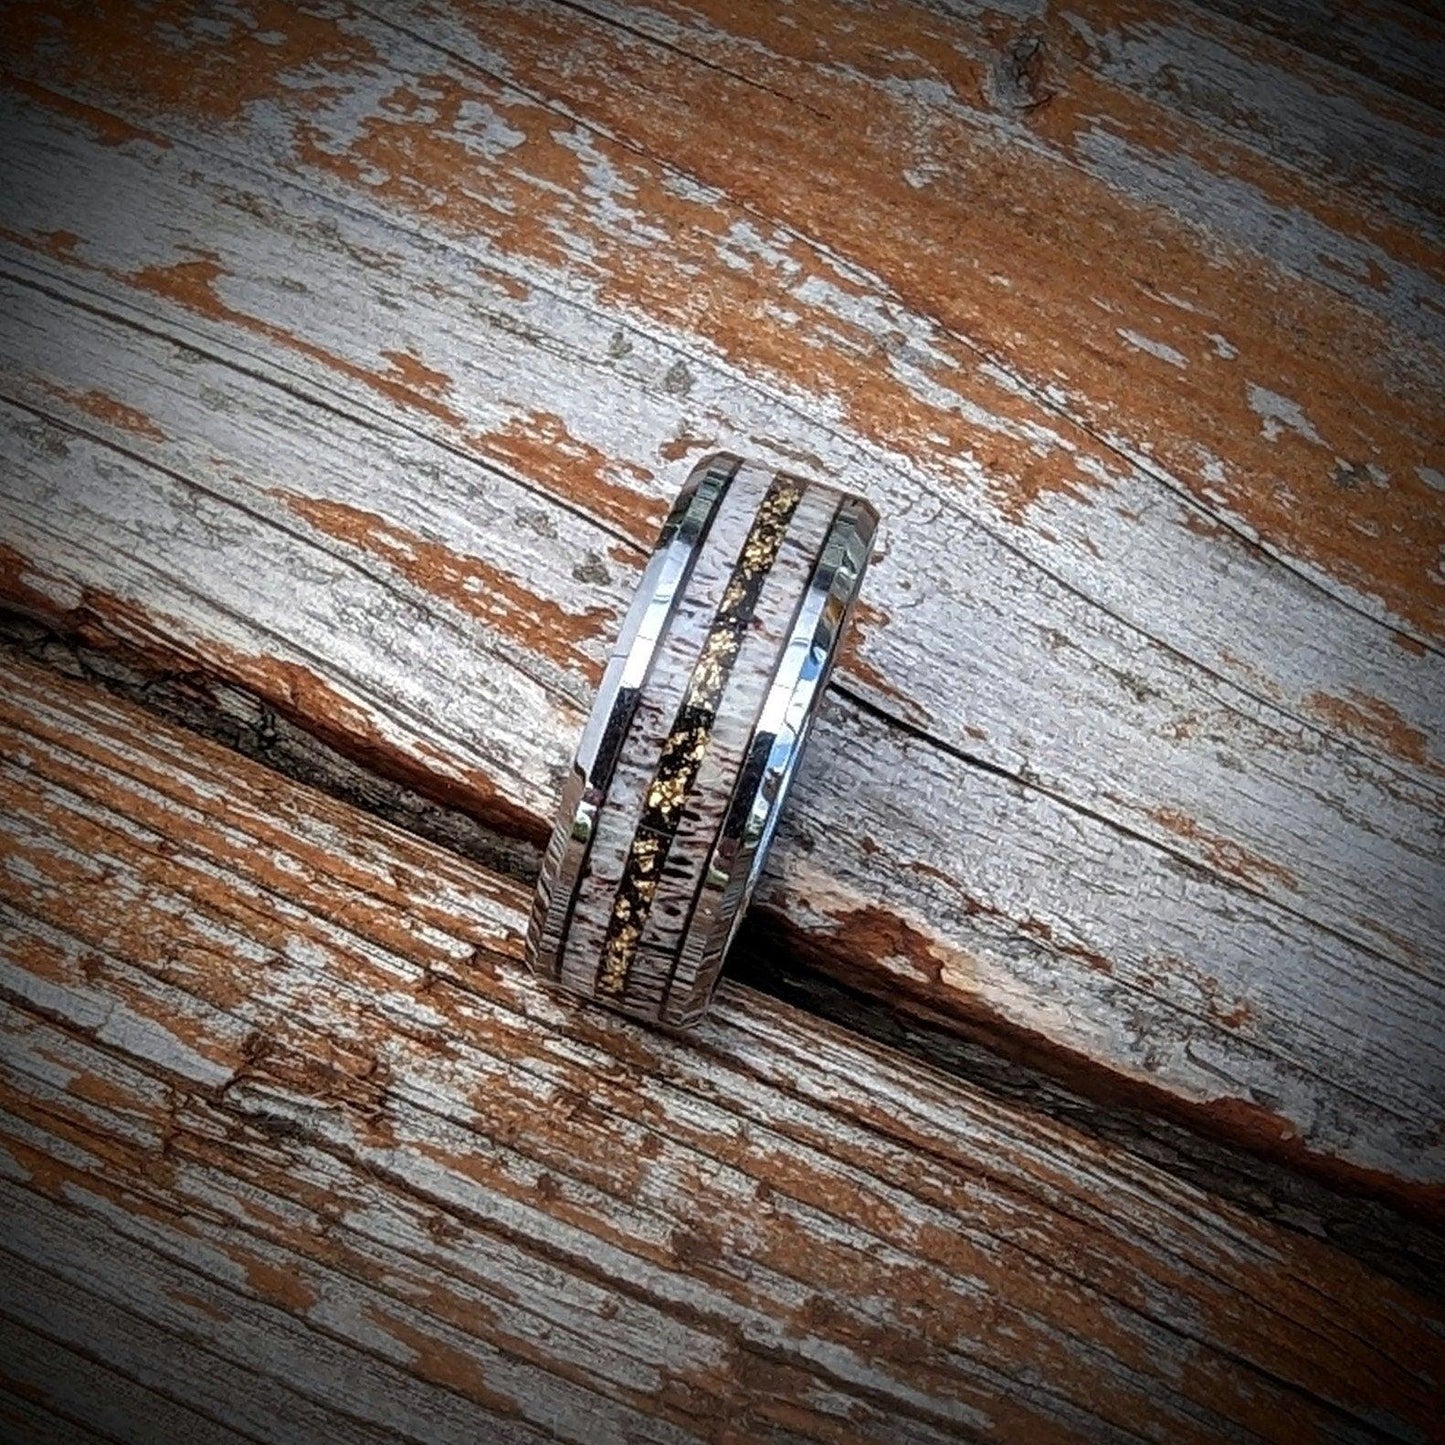 Elk Antler Wedding Ring with Gold Leaf Center Line